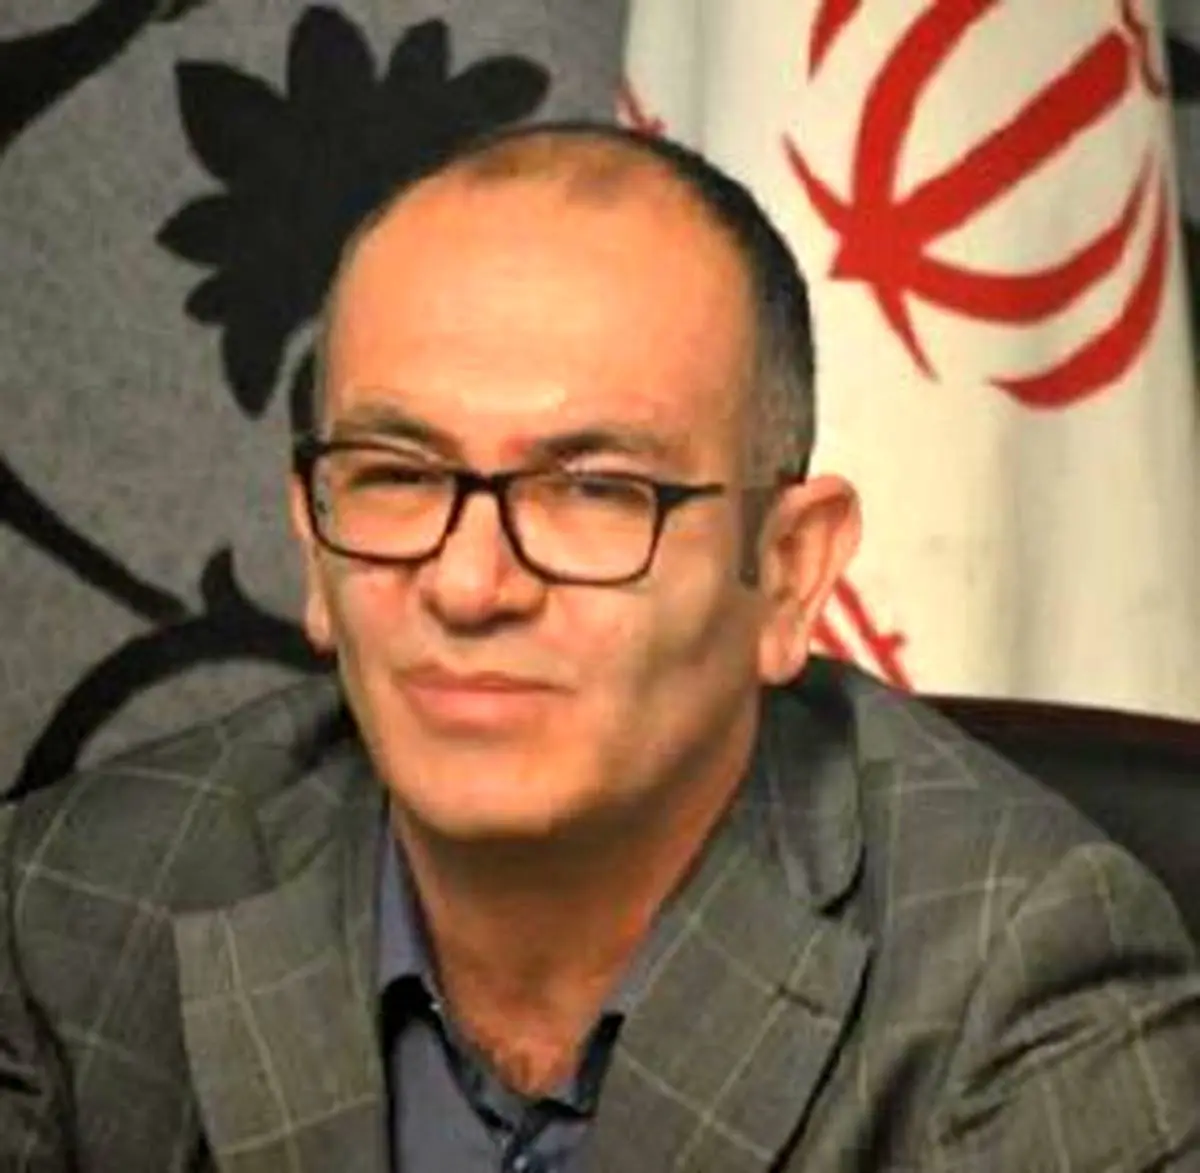 انتصاب اینالوئی به سمت معاونت فن‌آوری اطلاعات بانک ایران زمین